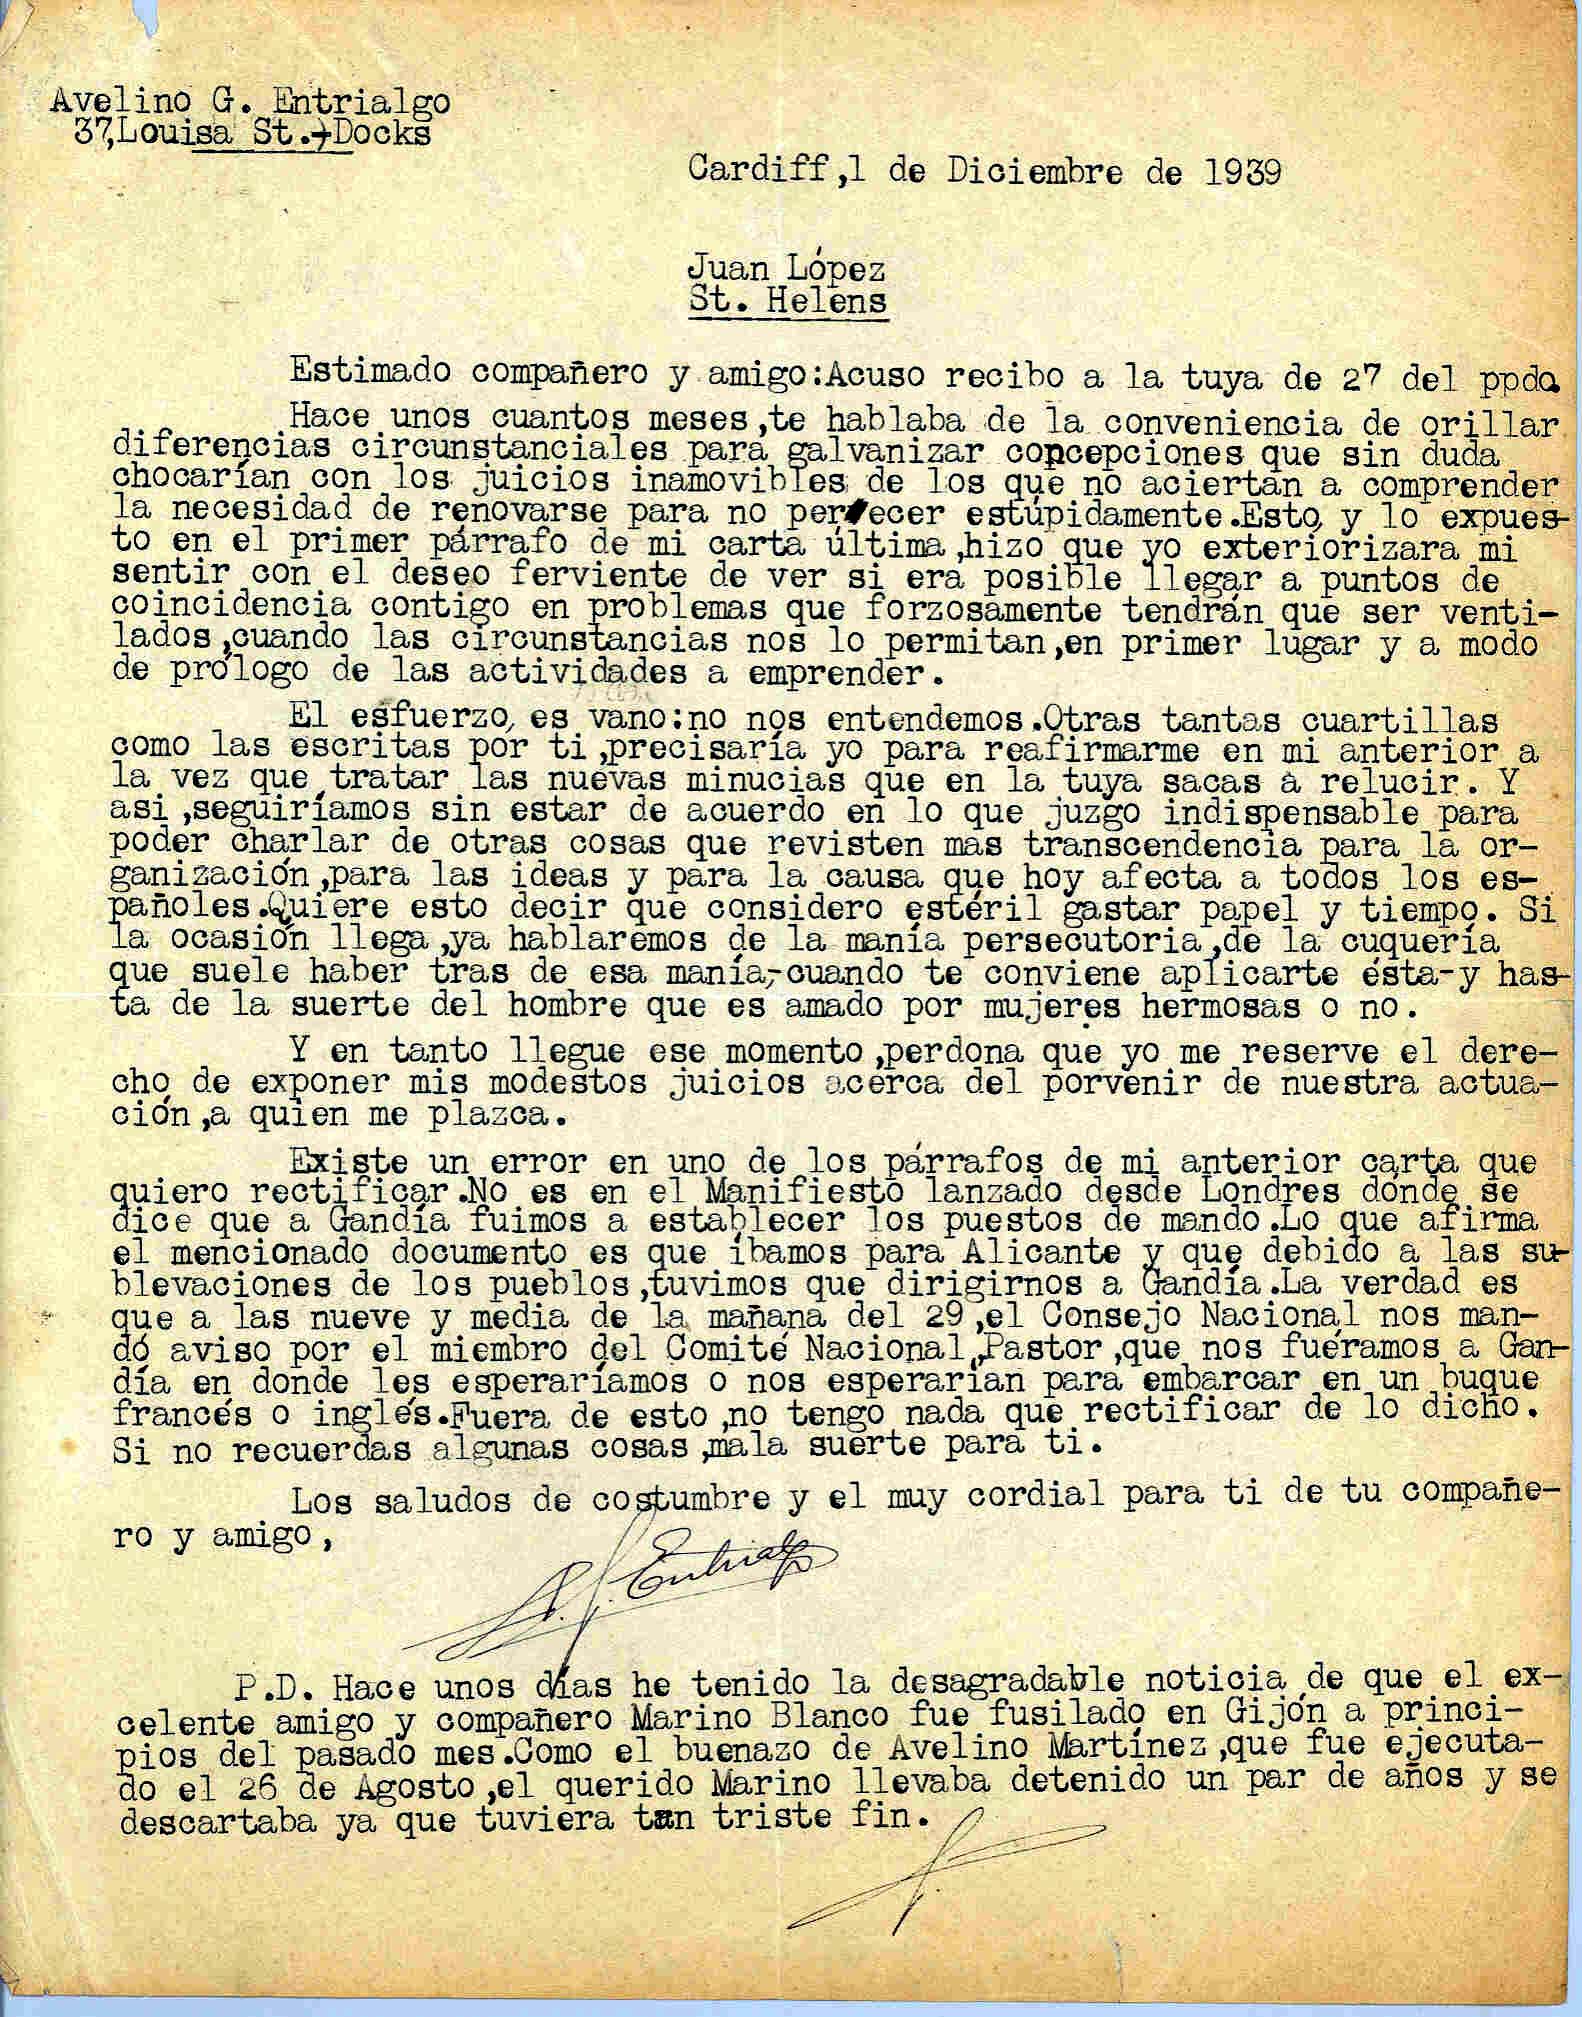 Carta de Avelino González Entrialgo sobre sus discrepancias con Juan López